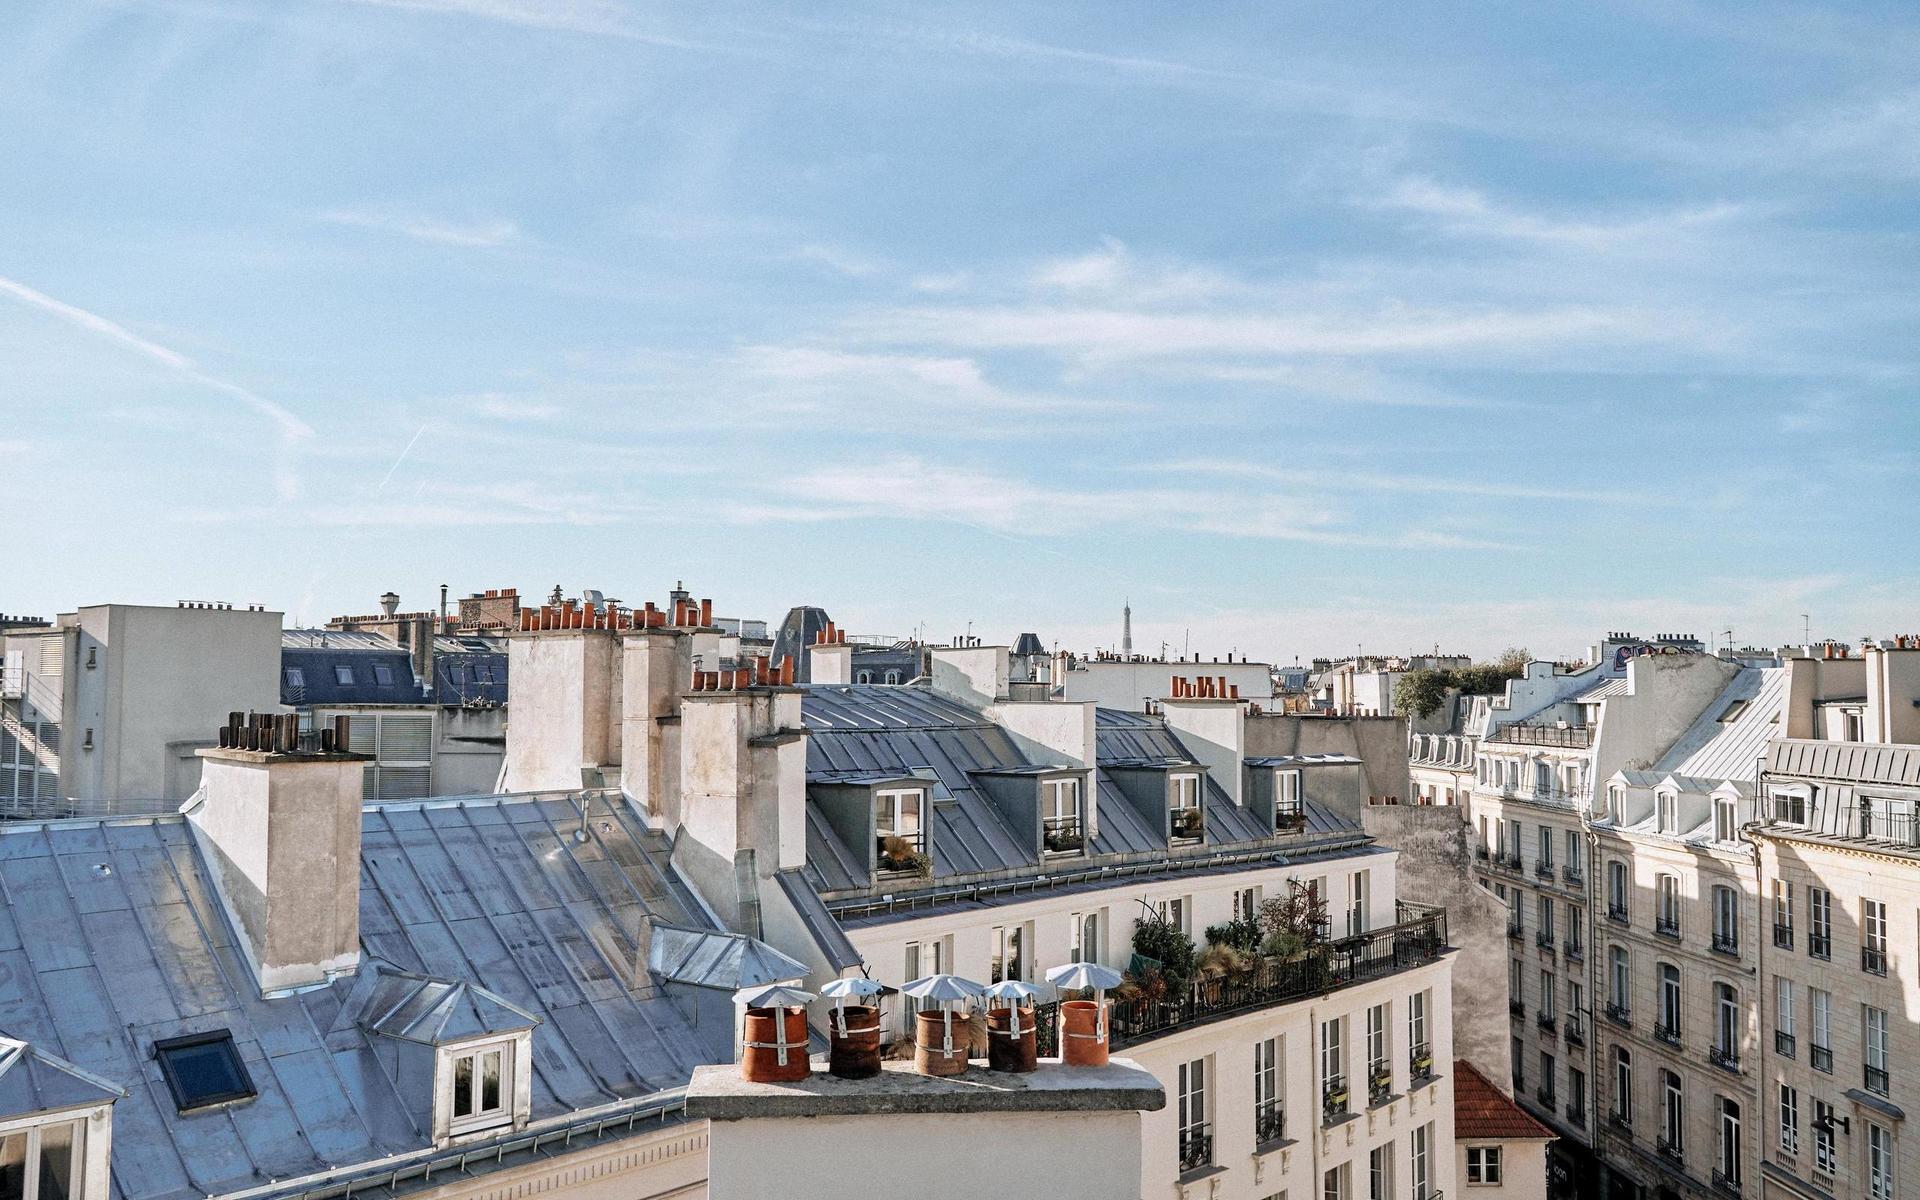 Nyöppnade Hôtel du Sentier är med och ritar om Paris karta, och är ett hotell som fokuserar på det hyperlokala. Inspirationen är den lilla byns kvaliteter med närhet till allt man behöver och nya tankar om hur byggnader används, mitt i en metropol.